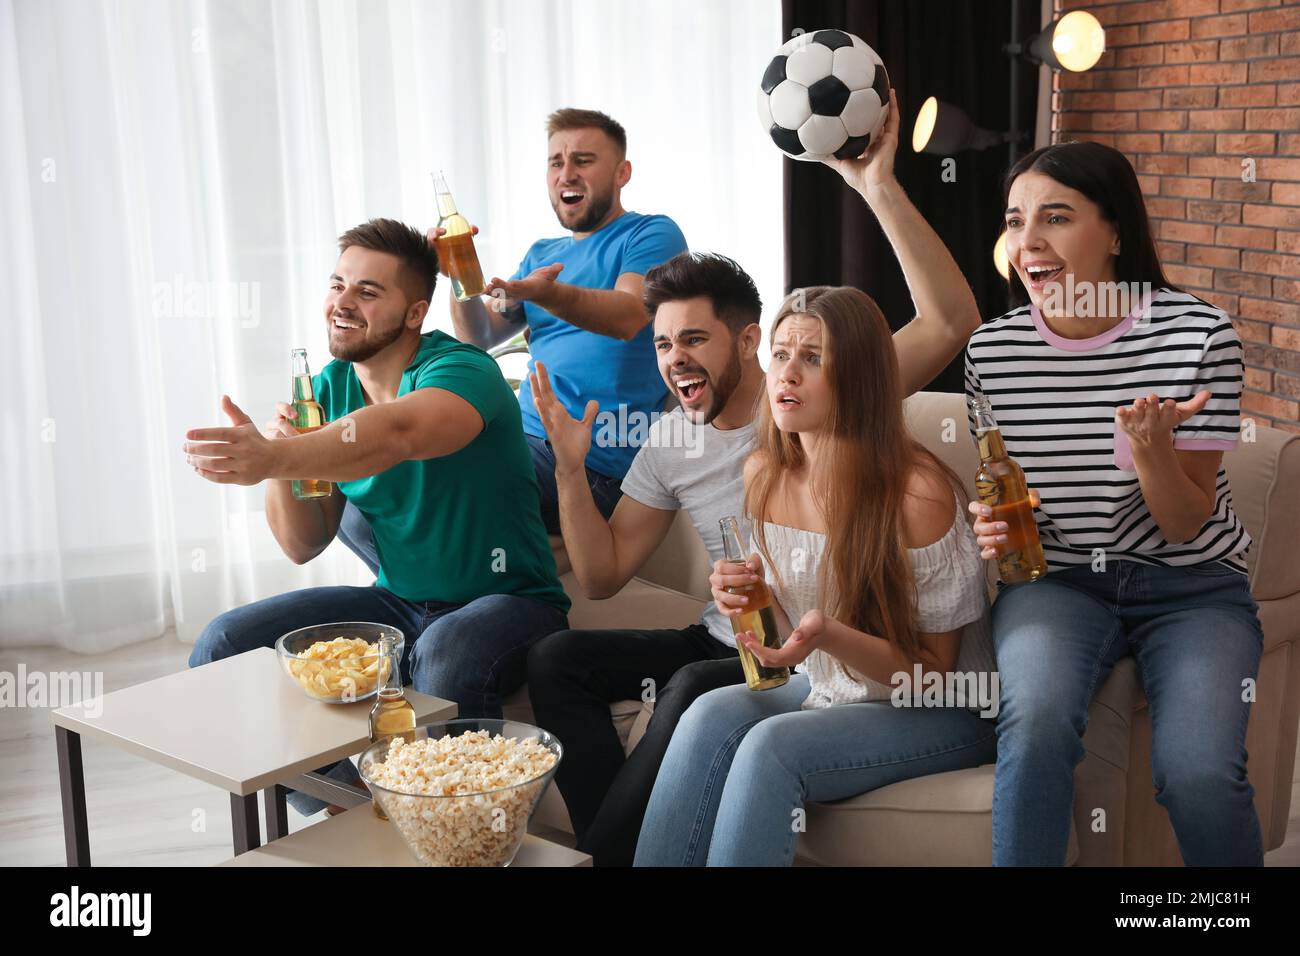 Eine Gruppe von Freunden, die zu Hause Fußball gucken Stockfotografie -  Alamy